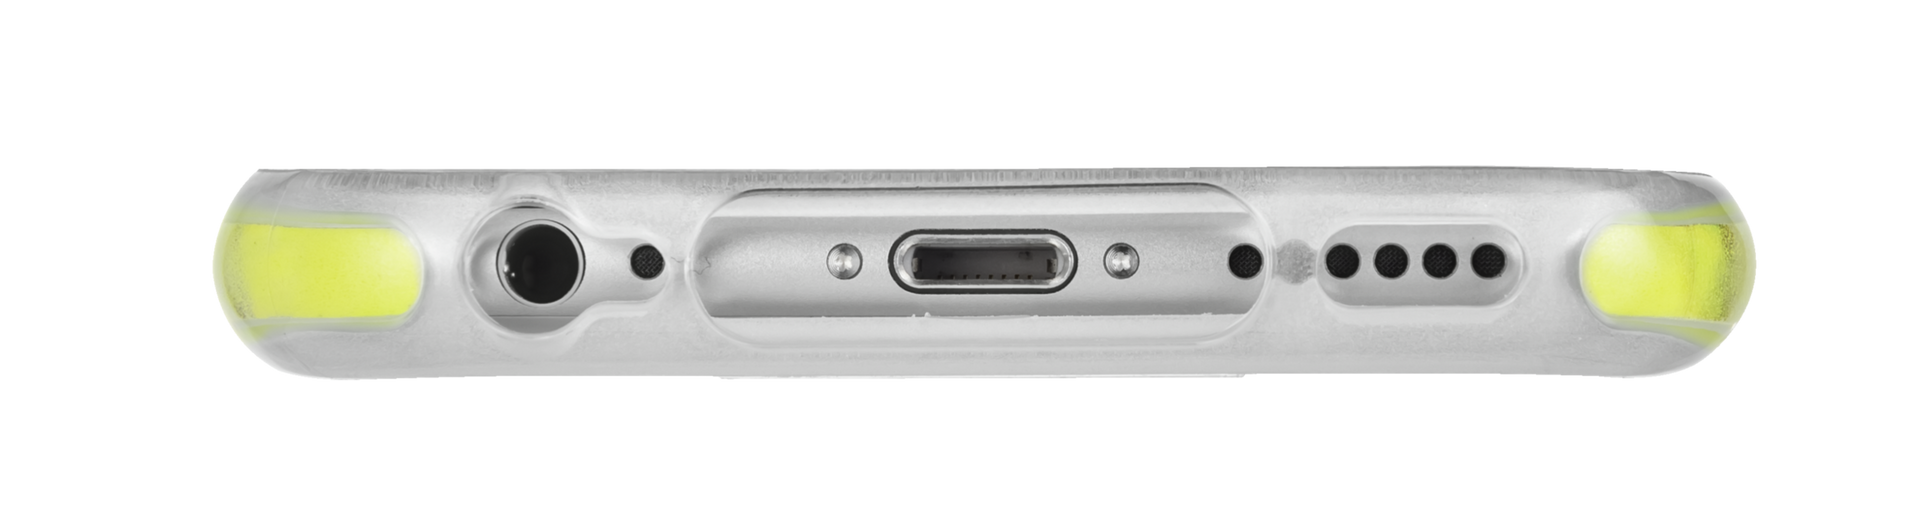 Scura Bumper Case for iPhone 6 Plus / 6S Plus-Bottom